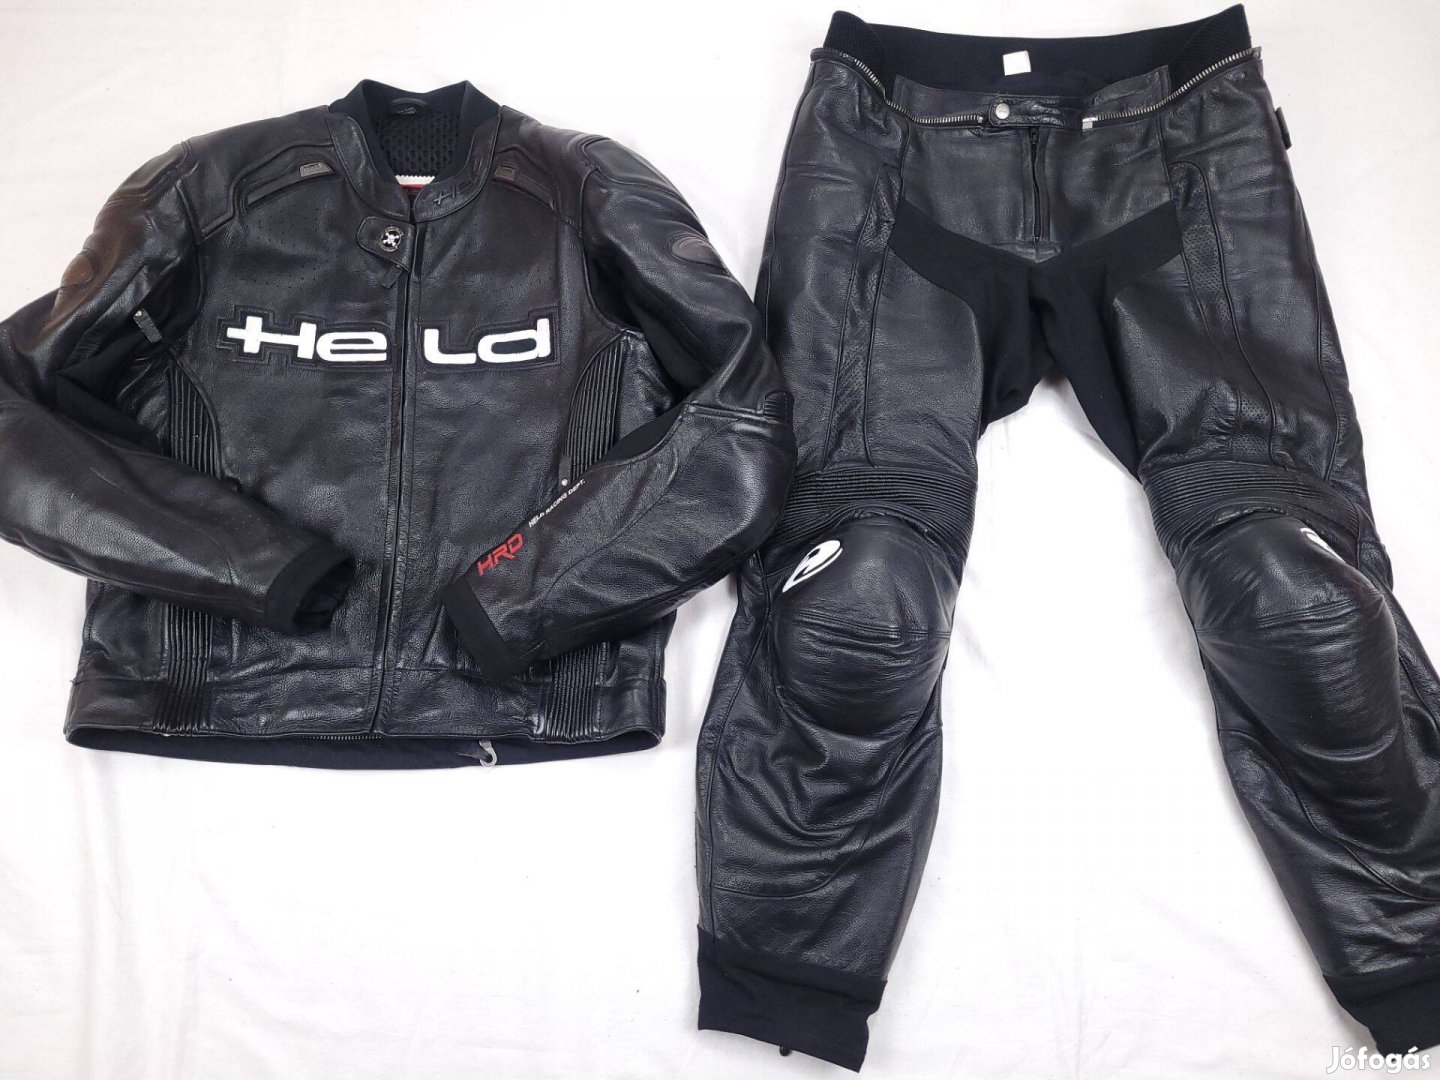 Held HRD Racing kétrészes férfi motoros bőrruha 2XL 56